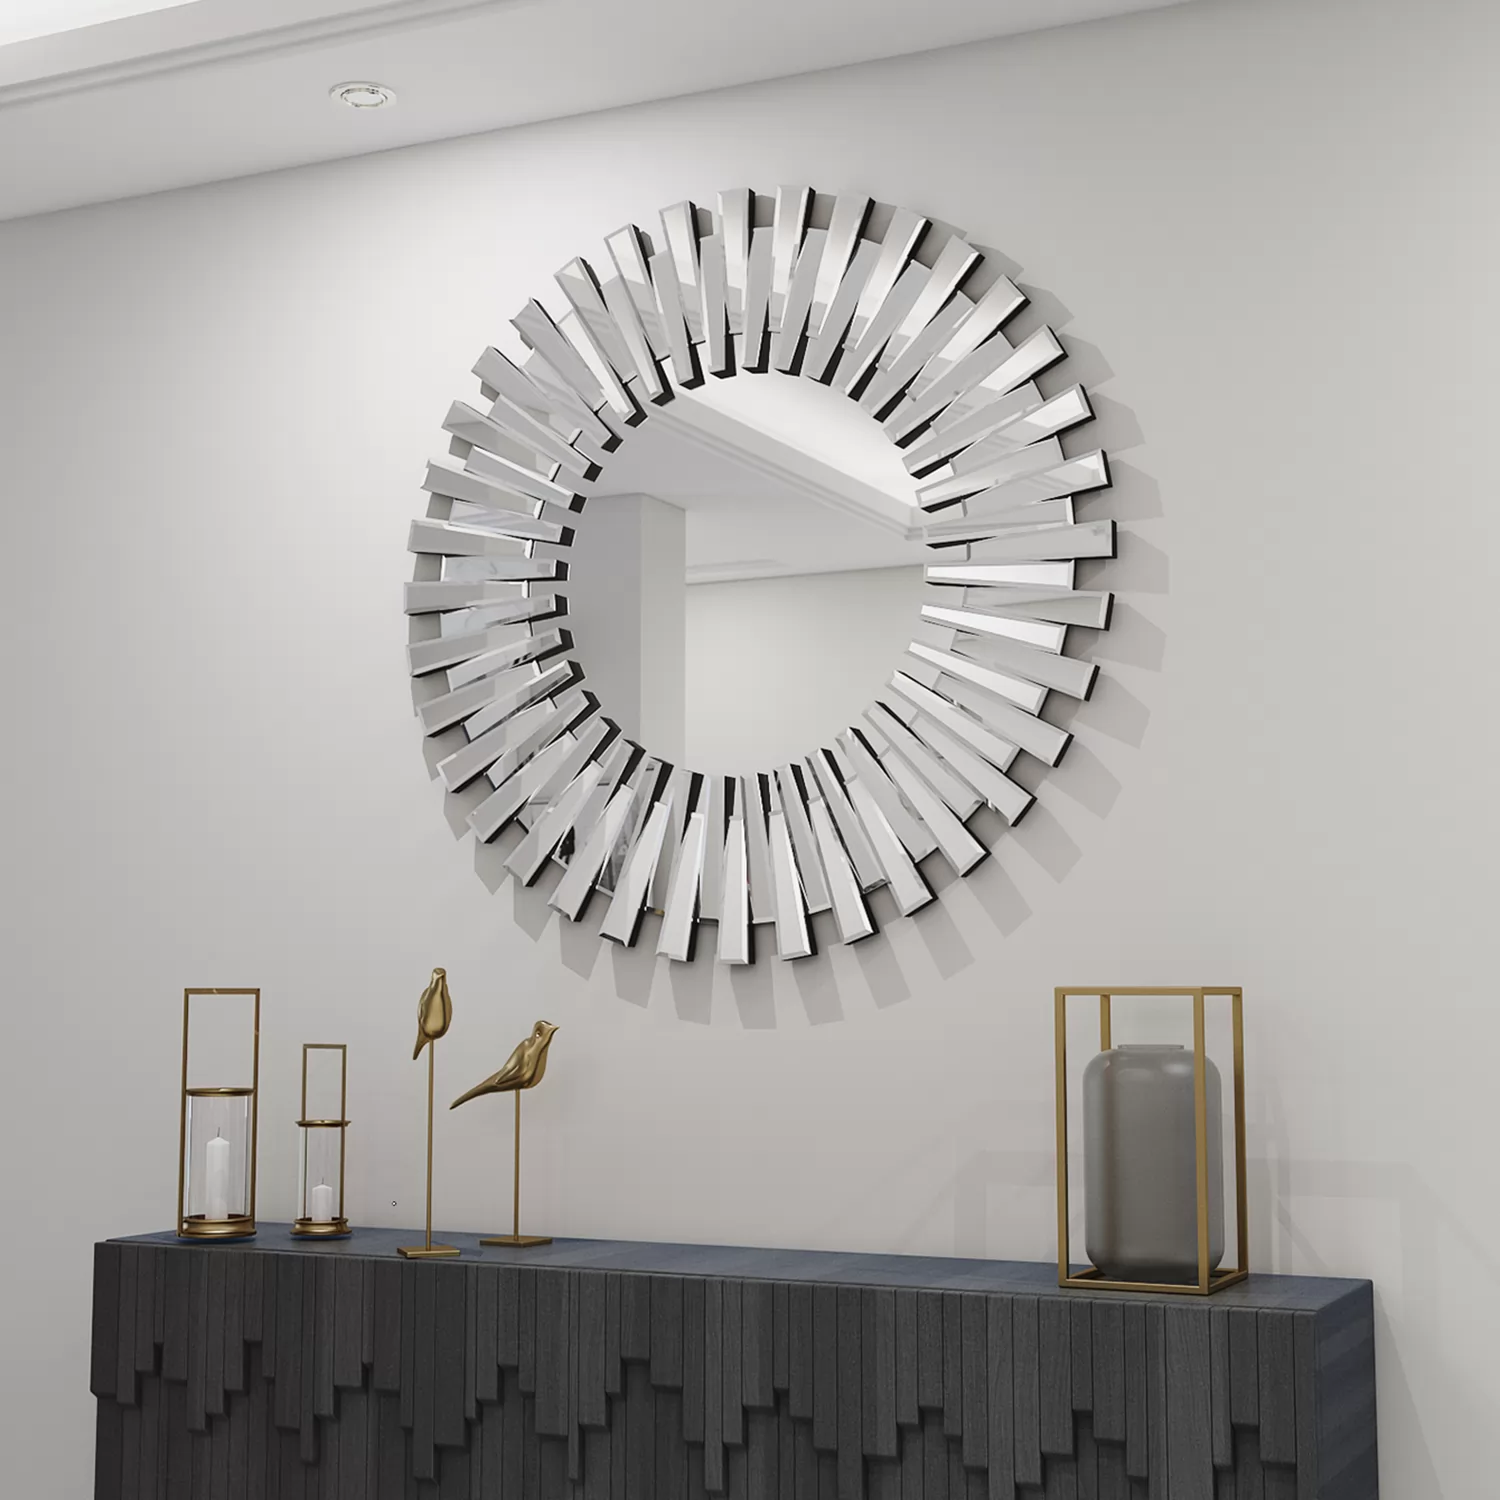 SHYFOY Wall Mirror for Wall Decor, 31.5'' Circular Decorative Statement Wall Mirror for Entryway, Hallway, Bedroom, Living room / SF-WM002